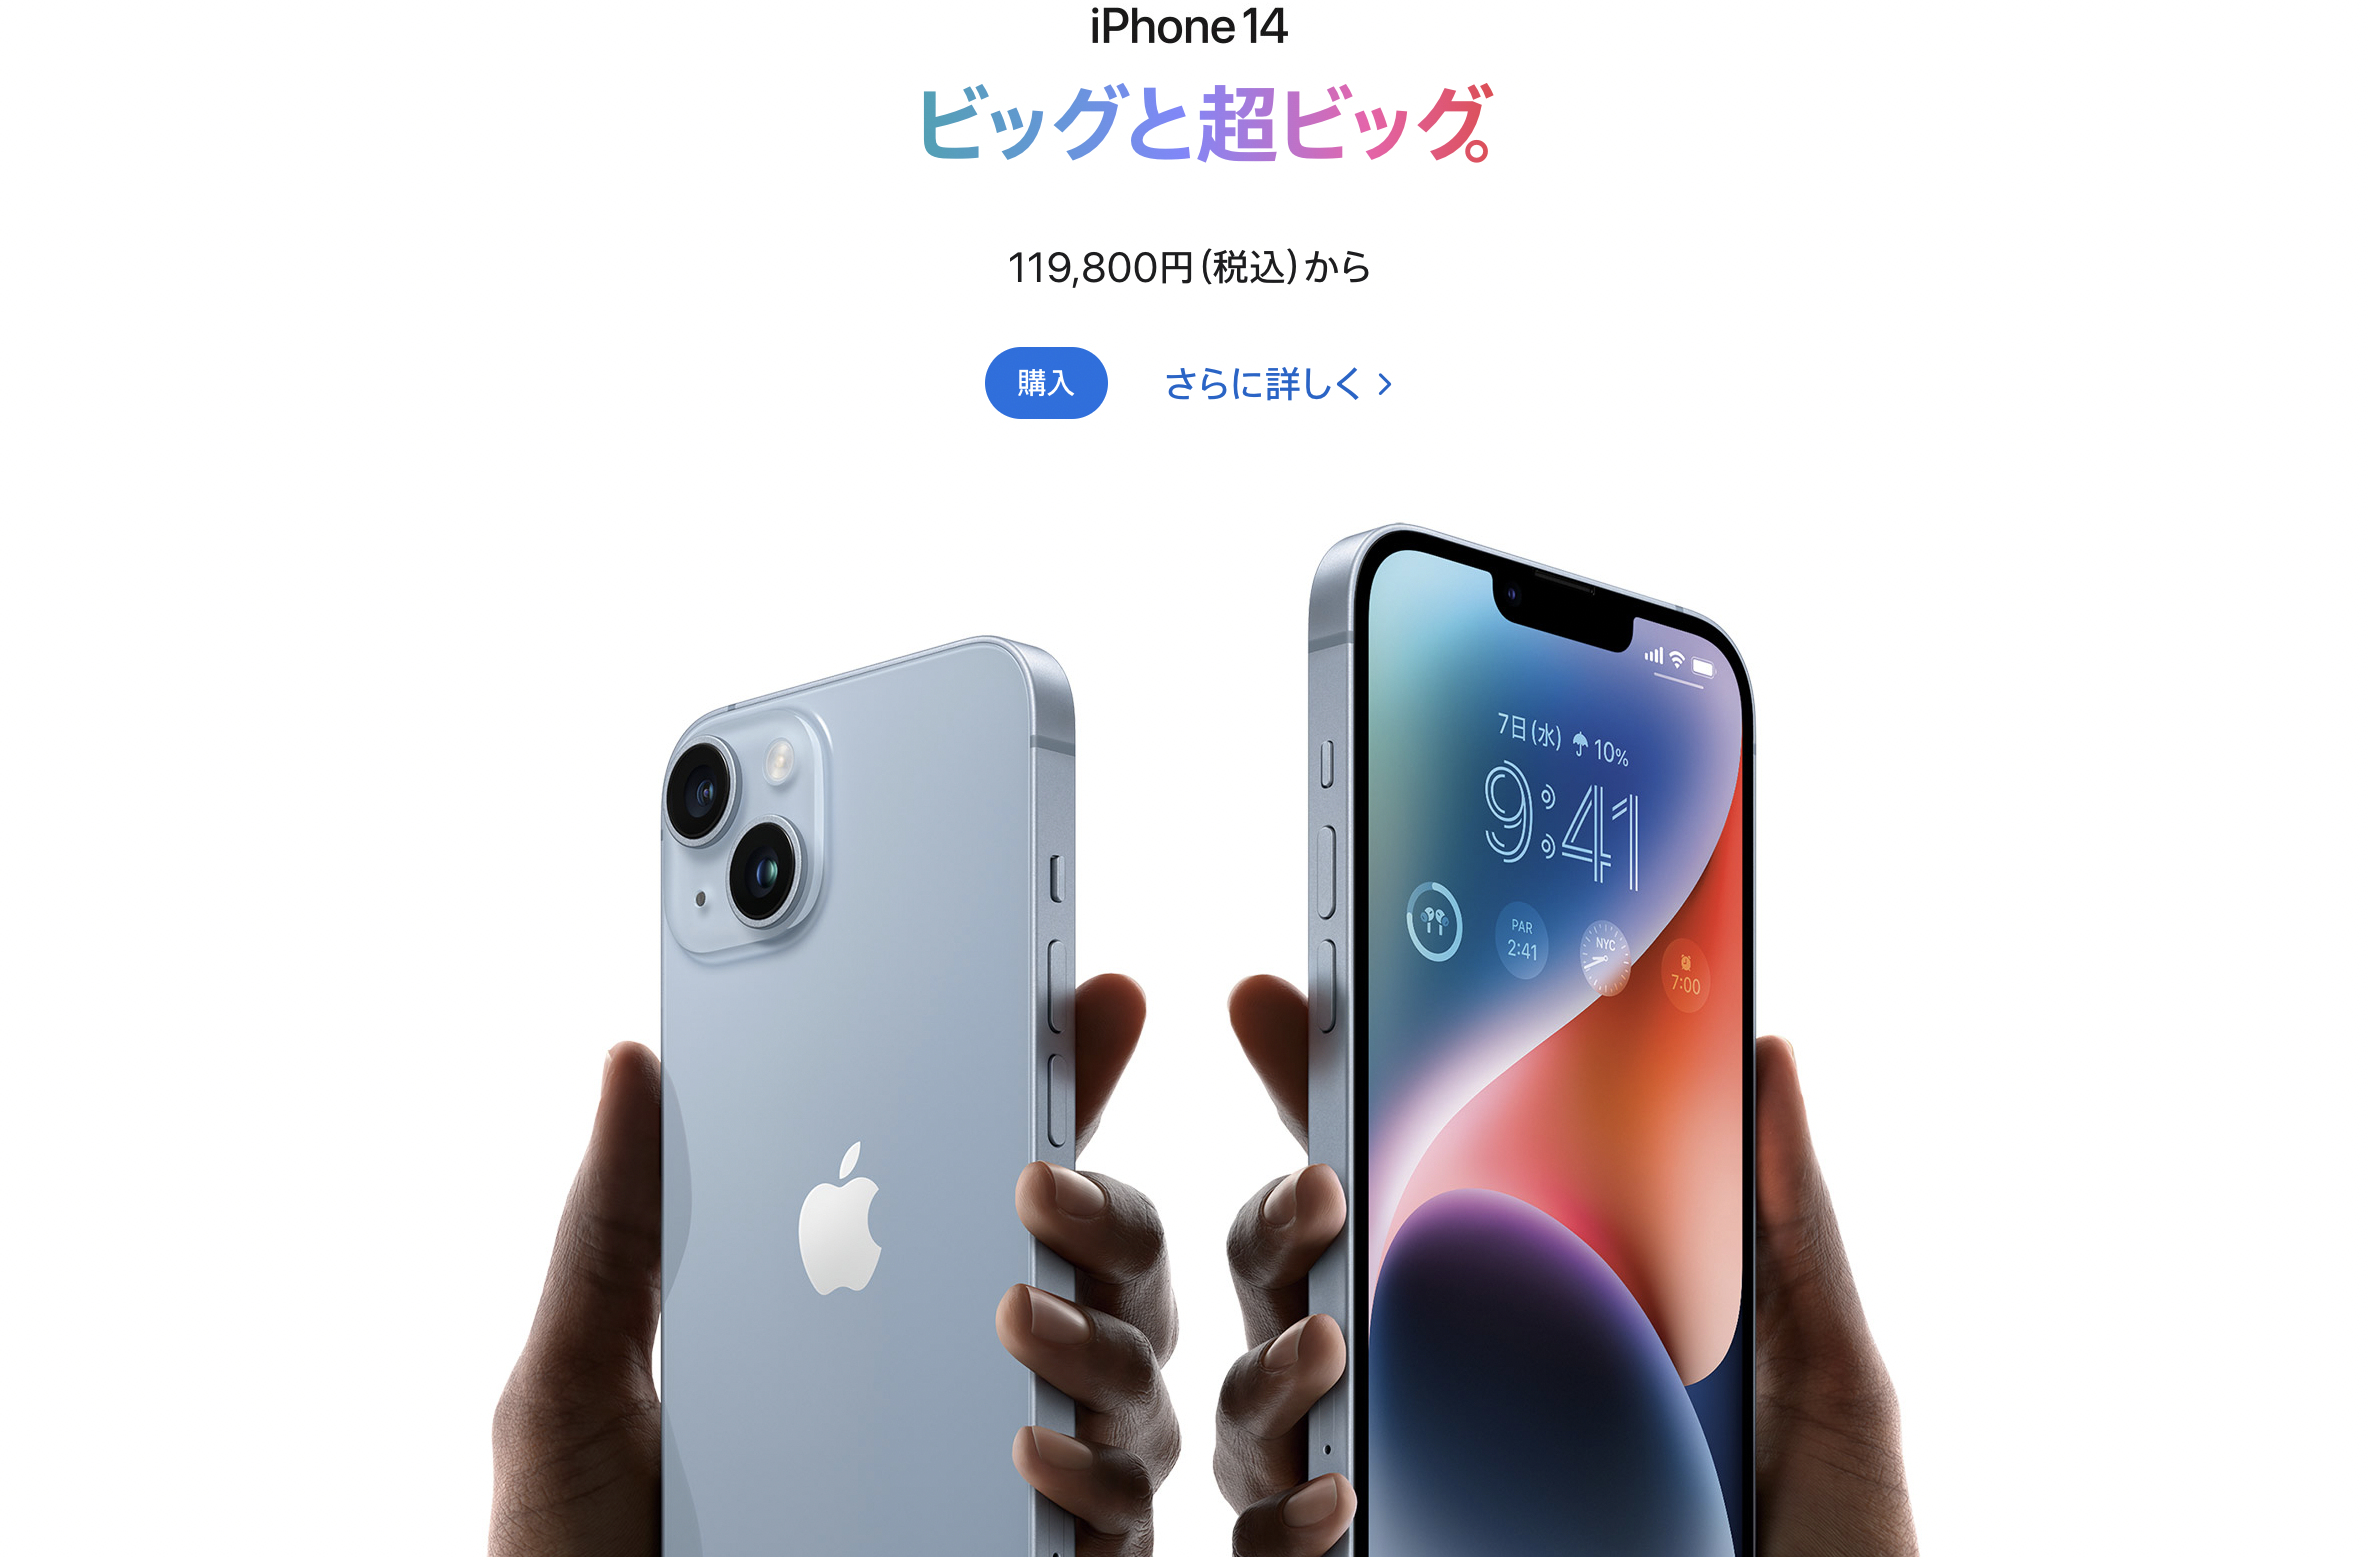 Giá bán iPhone 14 tại Nhật Bản.